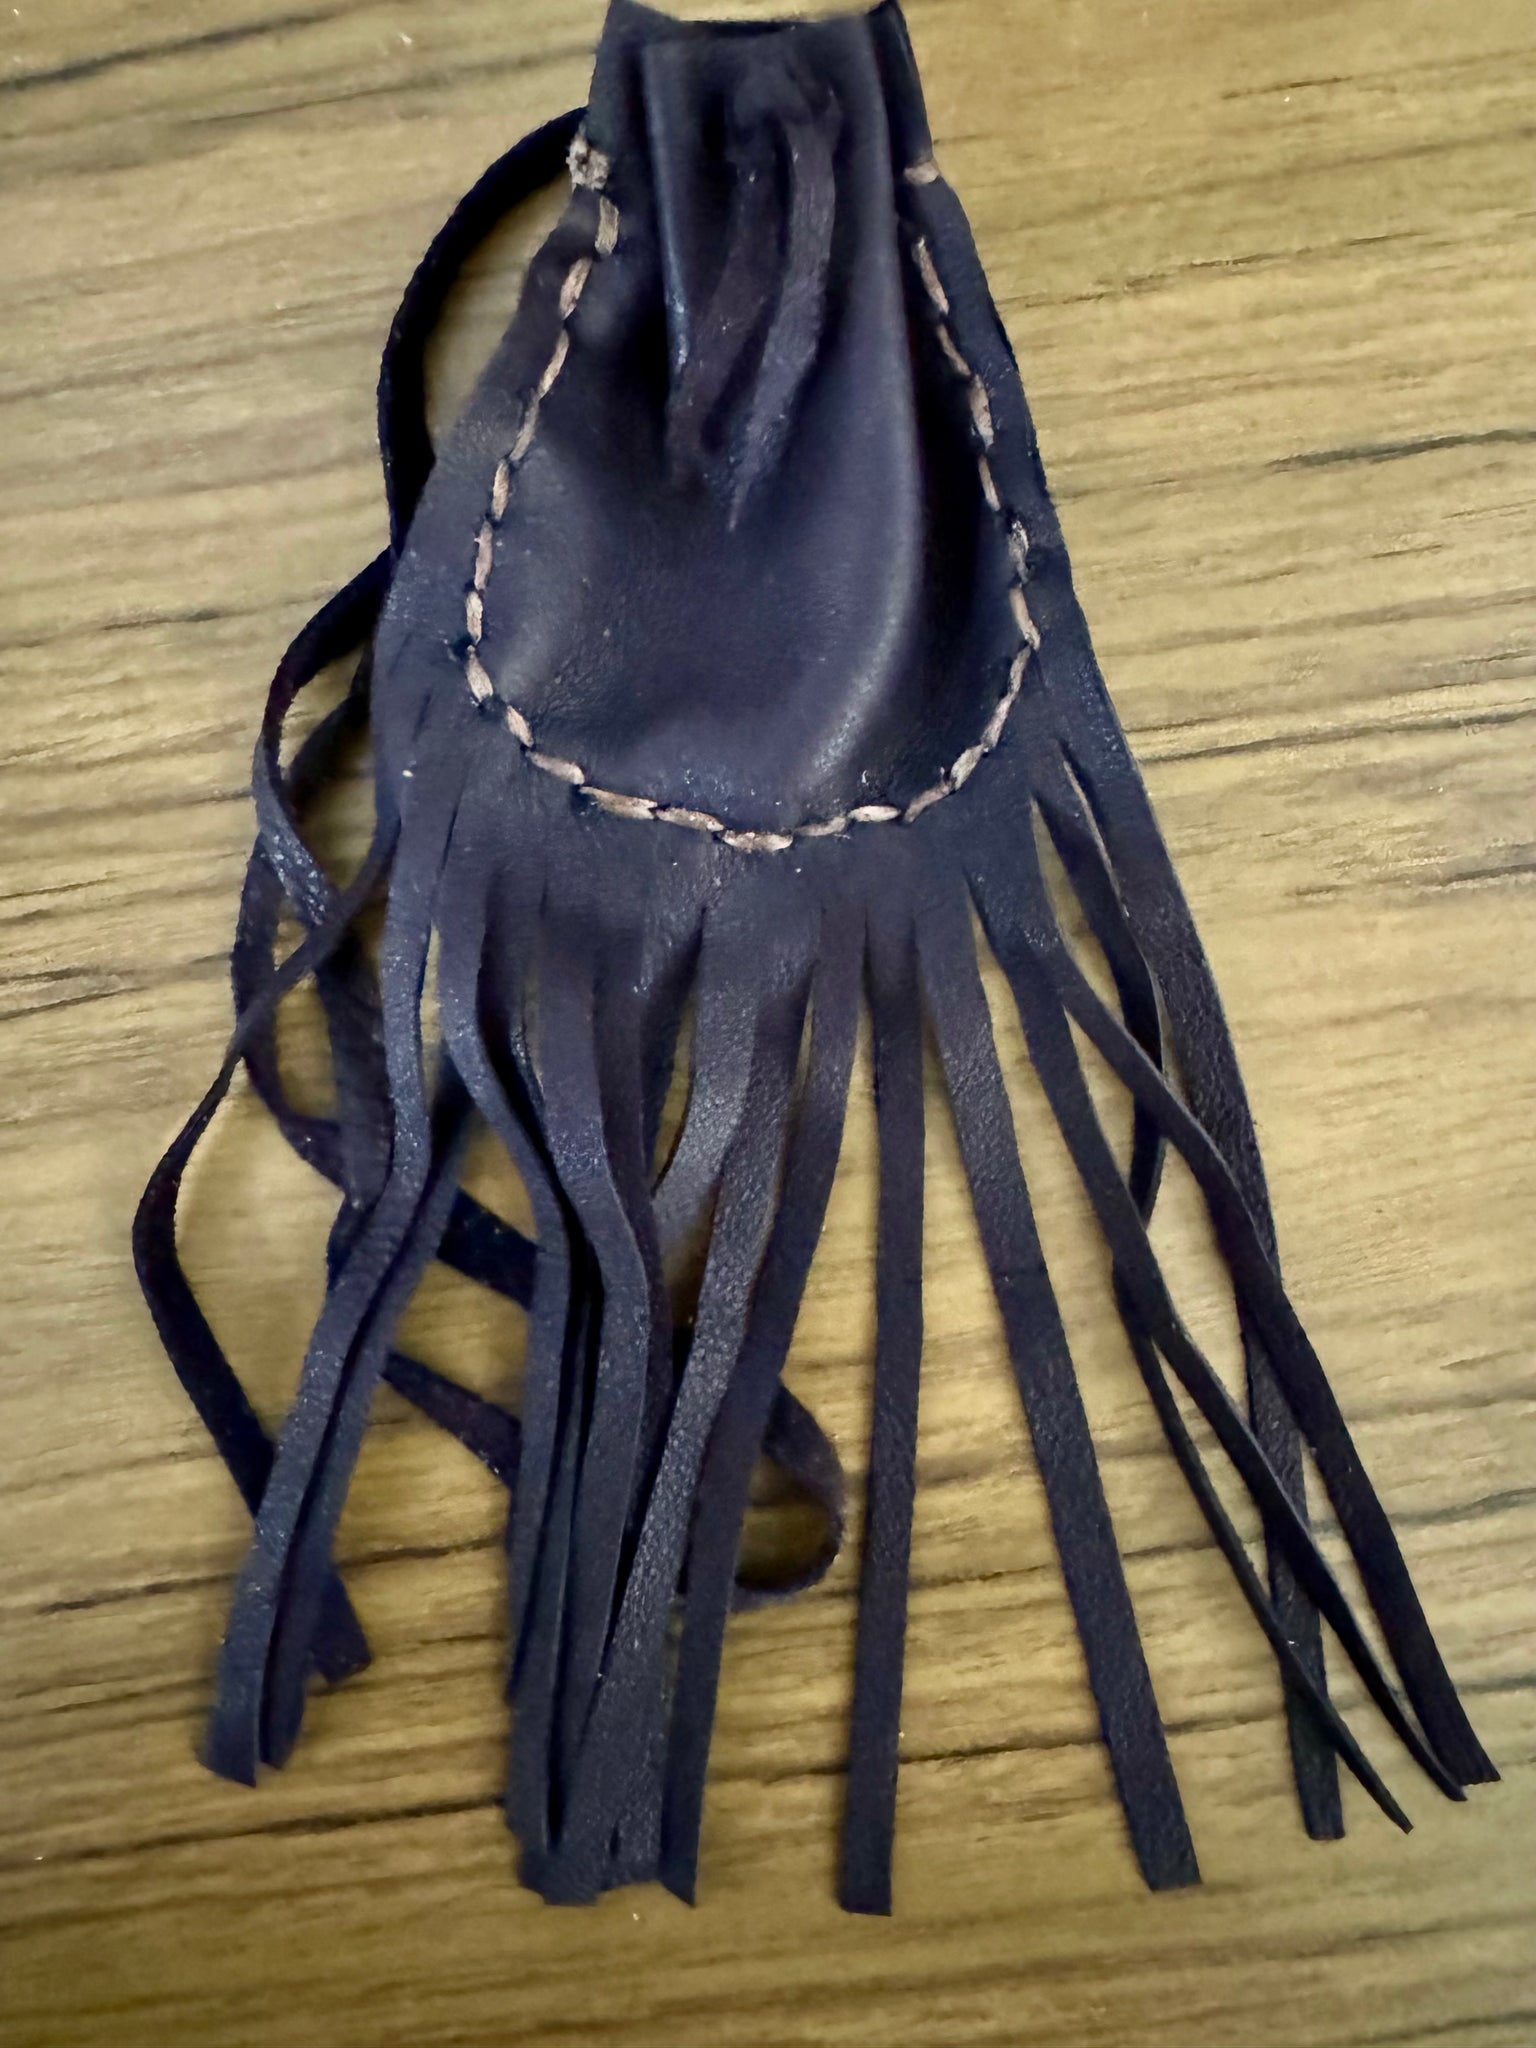 Leather Medicine Bag with fringe